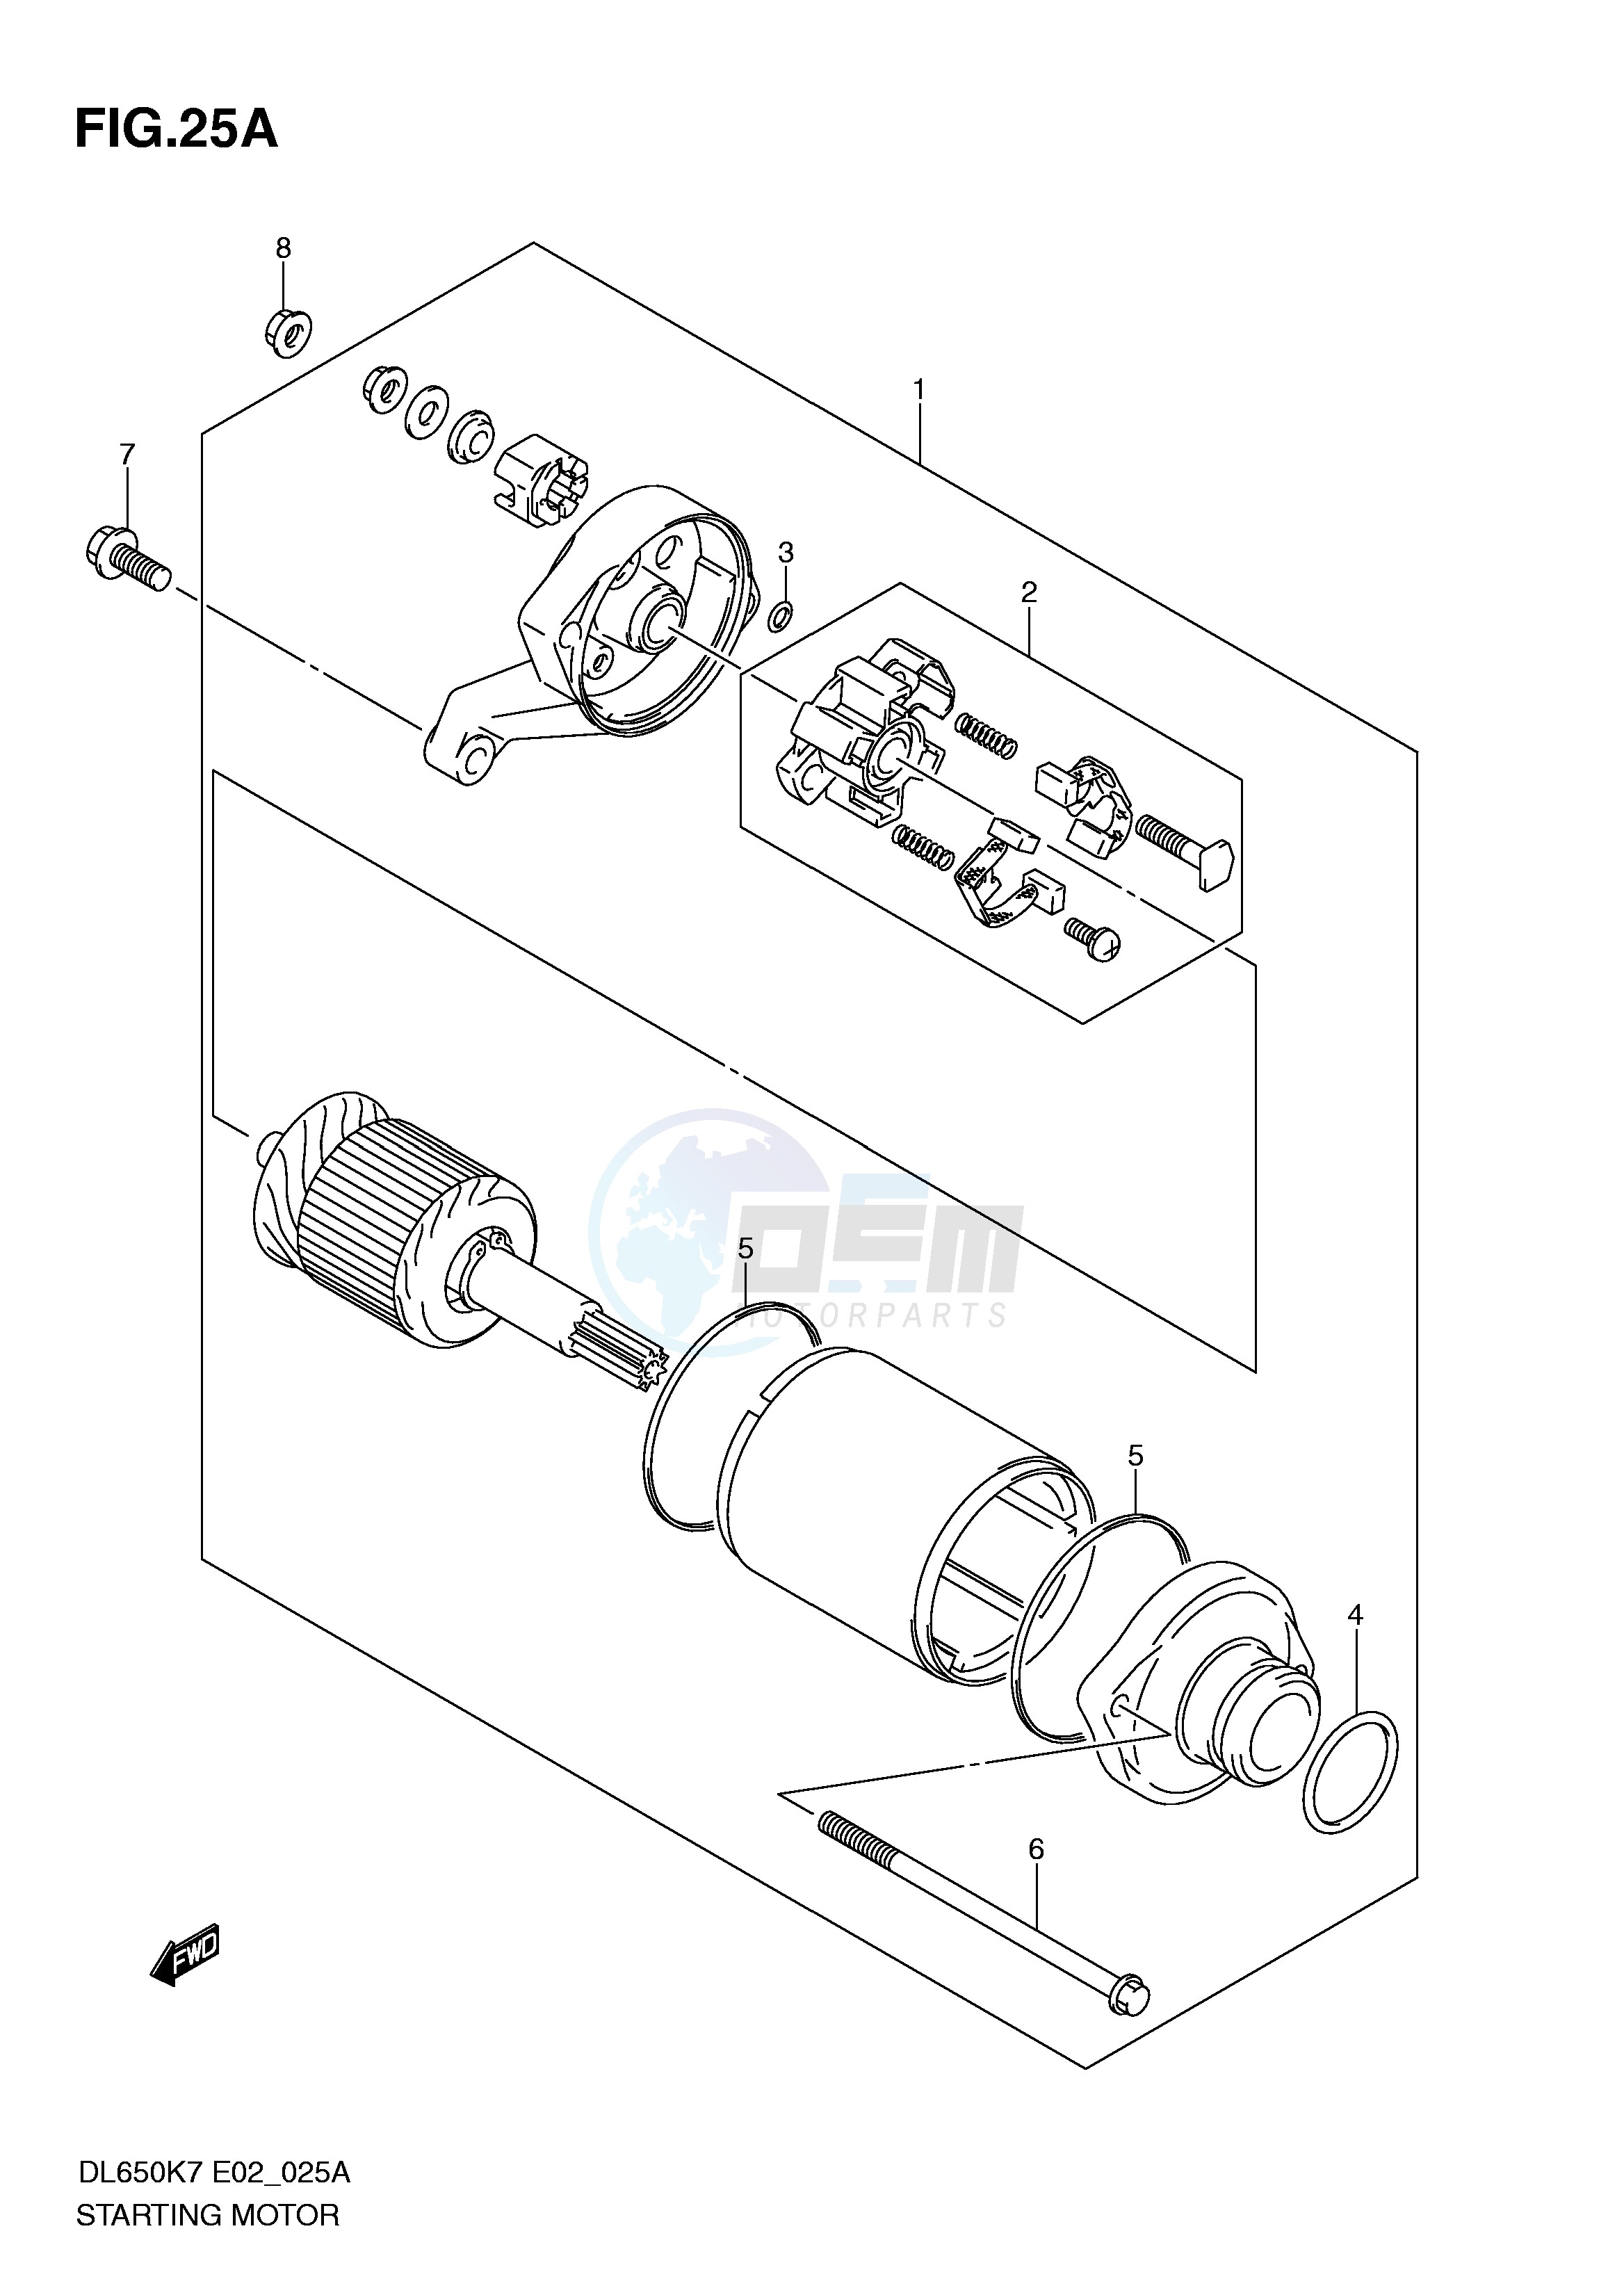 STARTING MOTOR (MODEL K9 P37,MODEL L0) blueprint